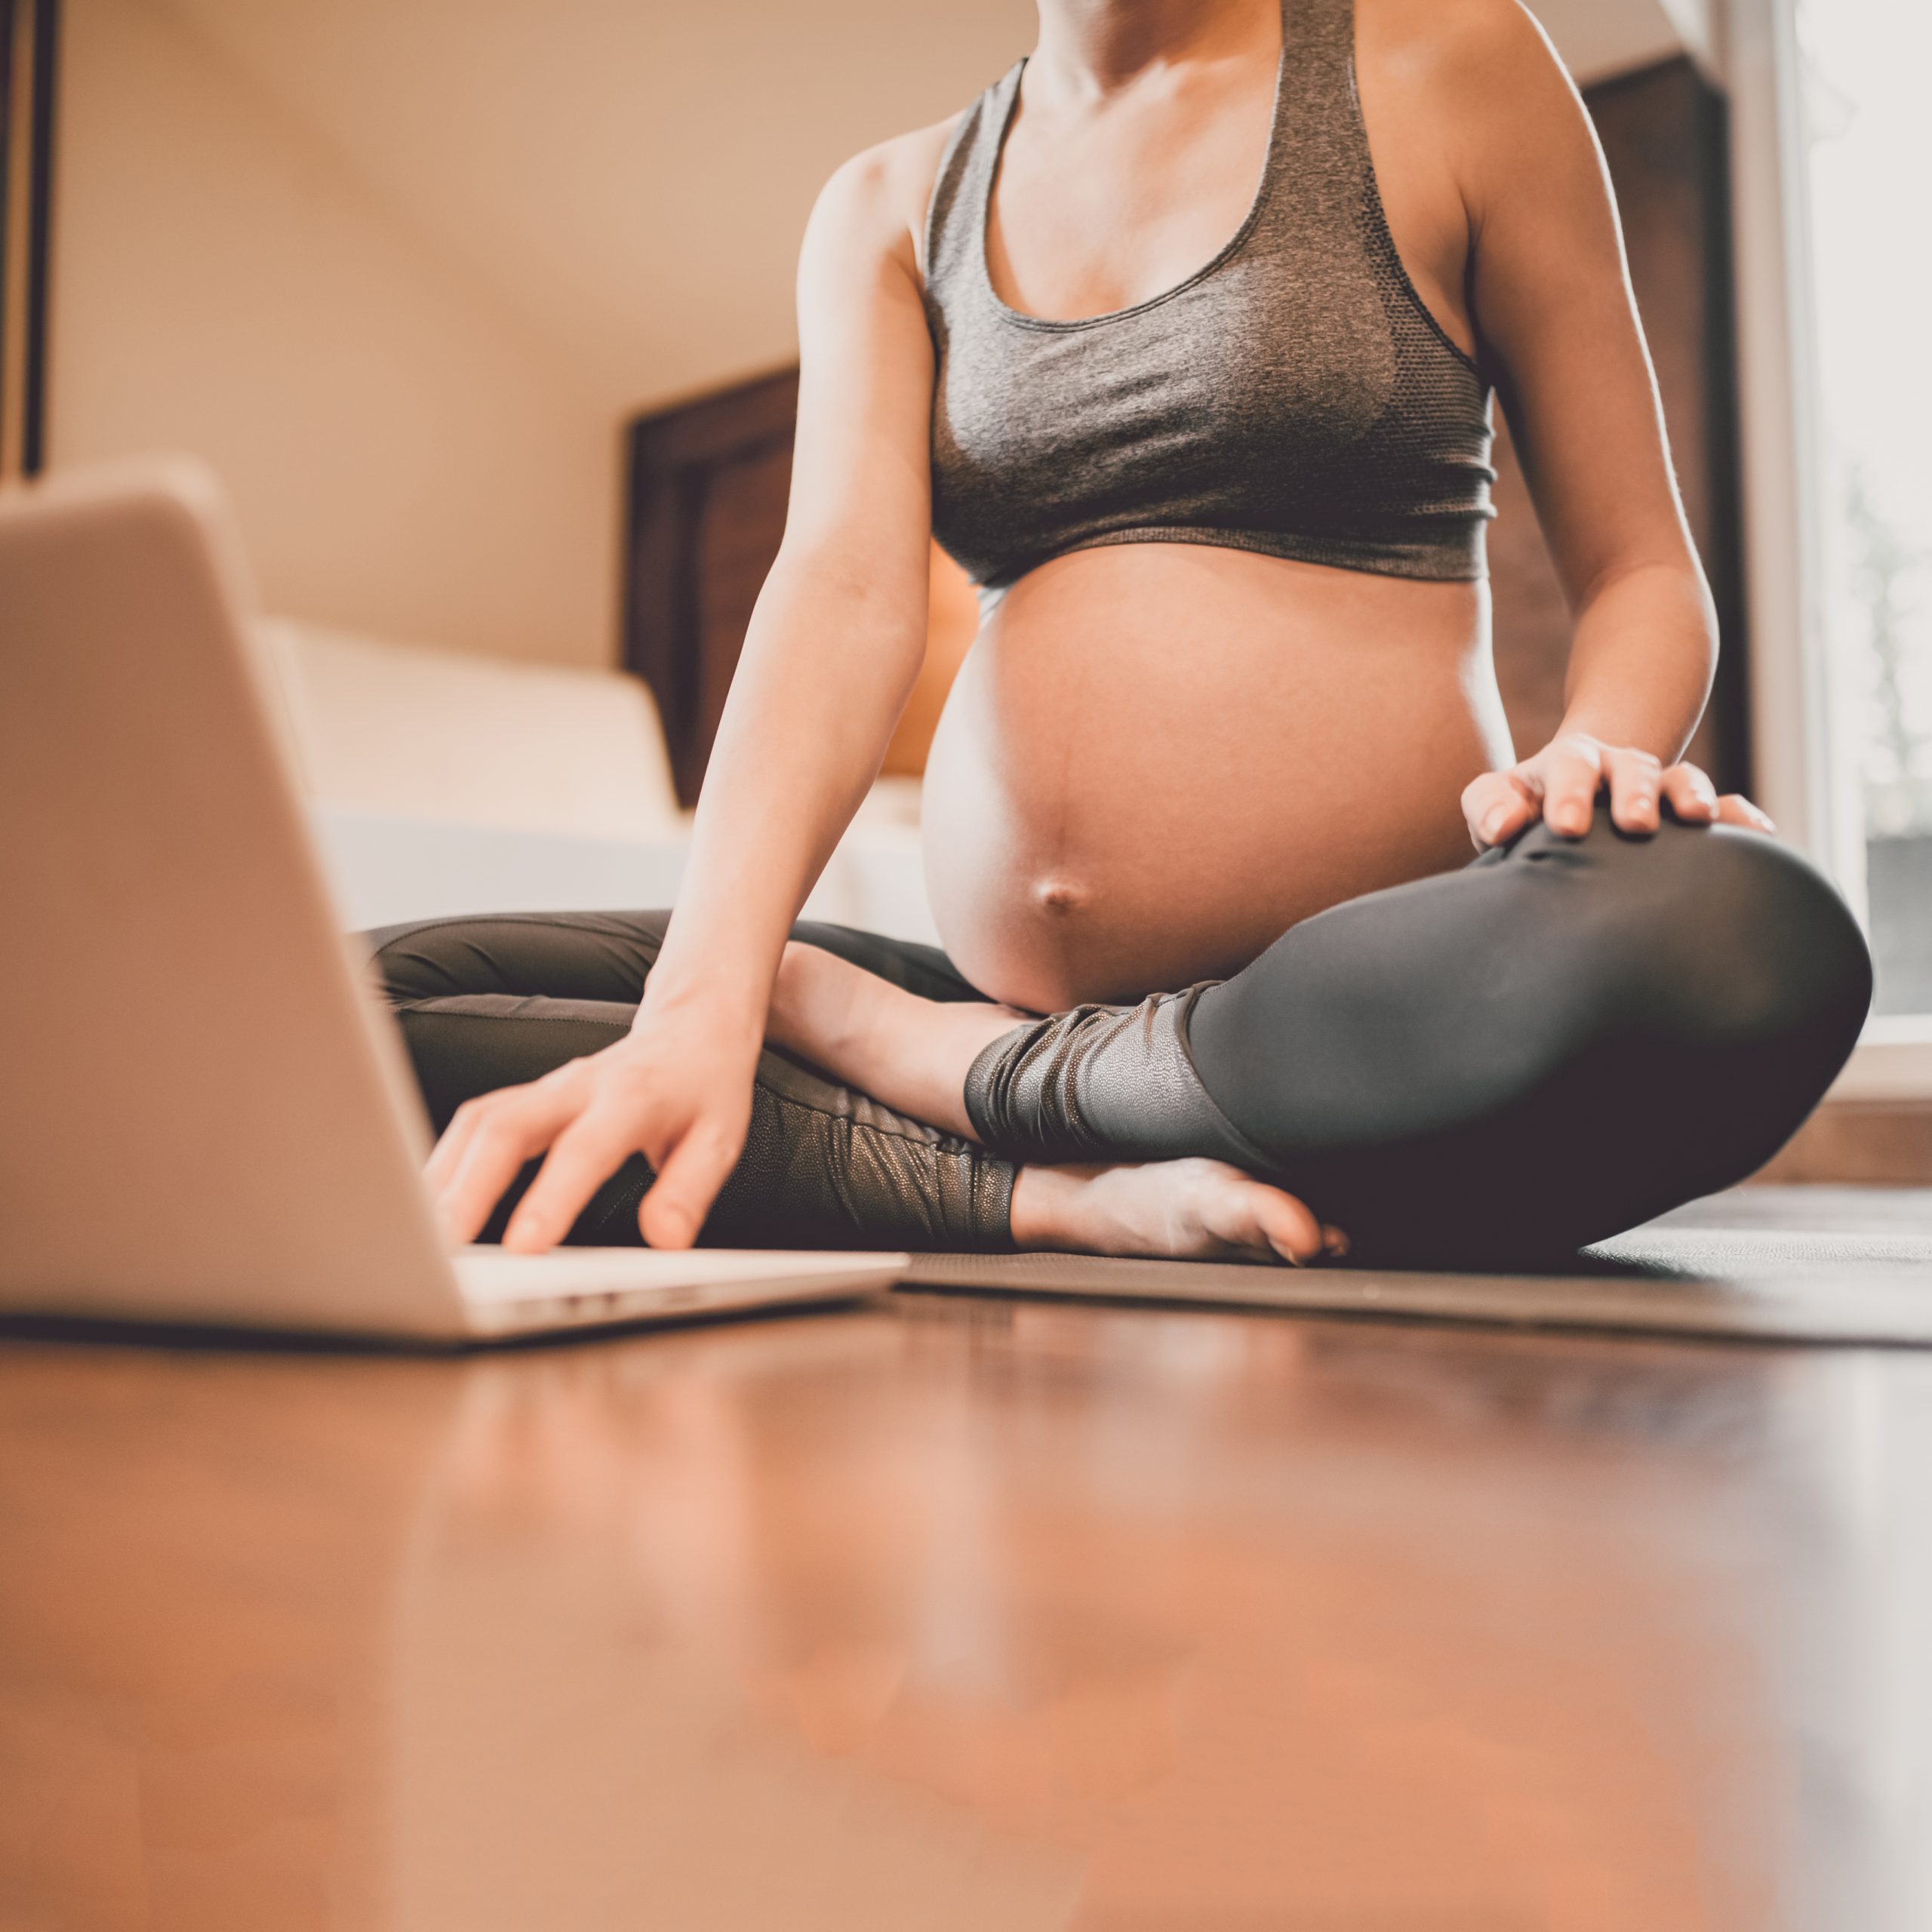 Maternactive-programme-dentrainement-prenatal-postnatal-femme-enceinte-grossesse-preparation-accouchement-passion-maternite-cours-en-ligne-zoom